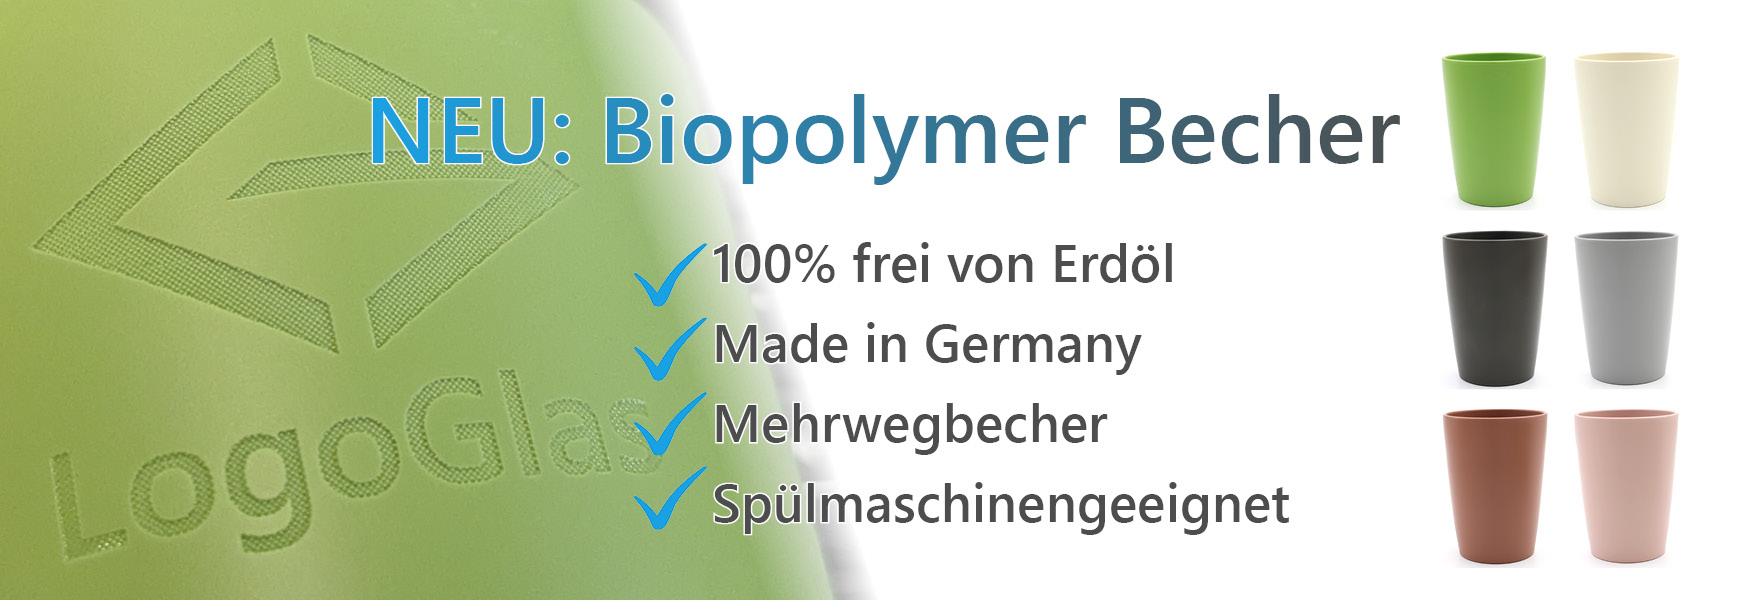 biopolymer becher